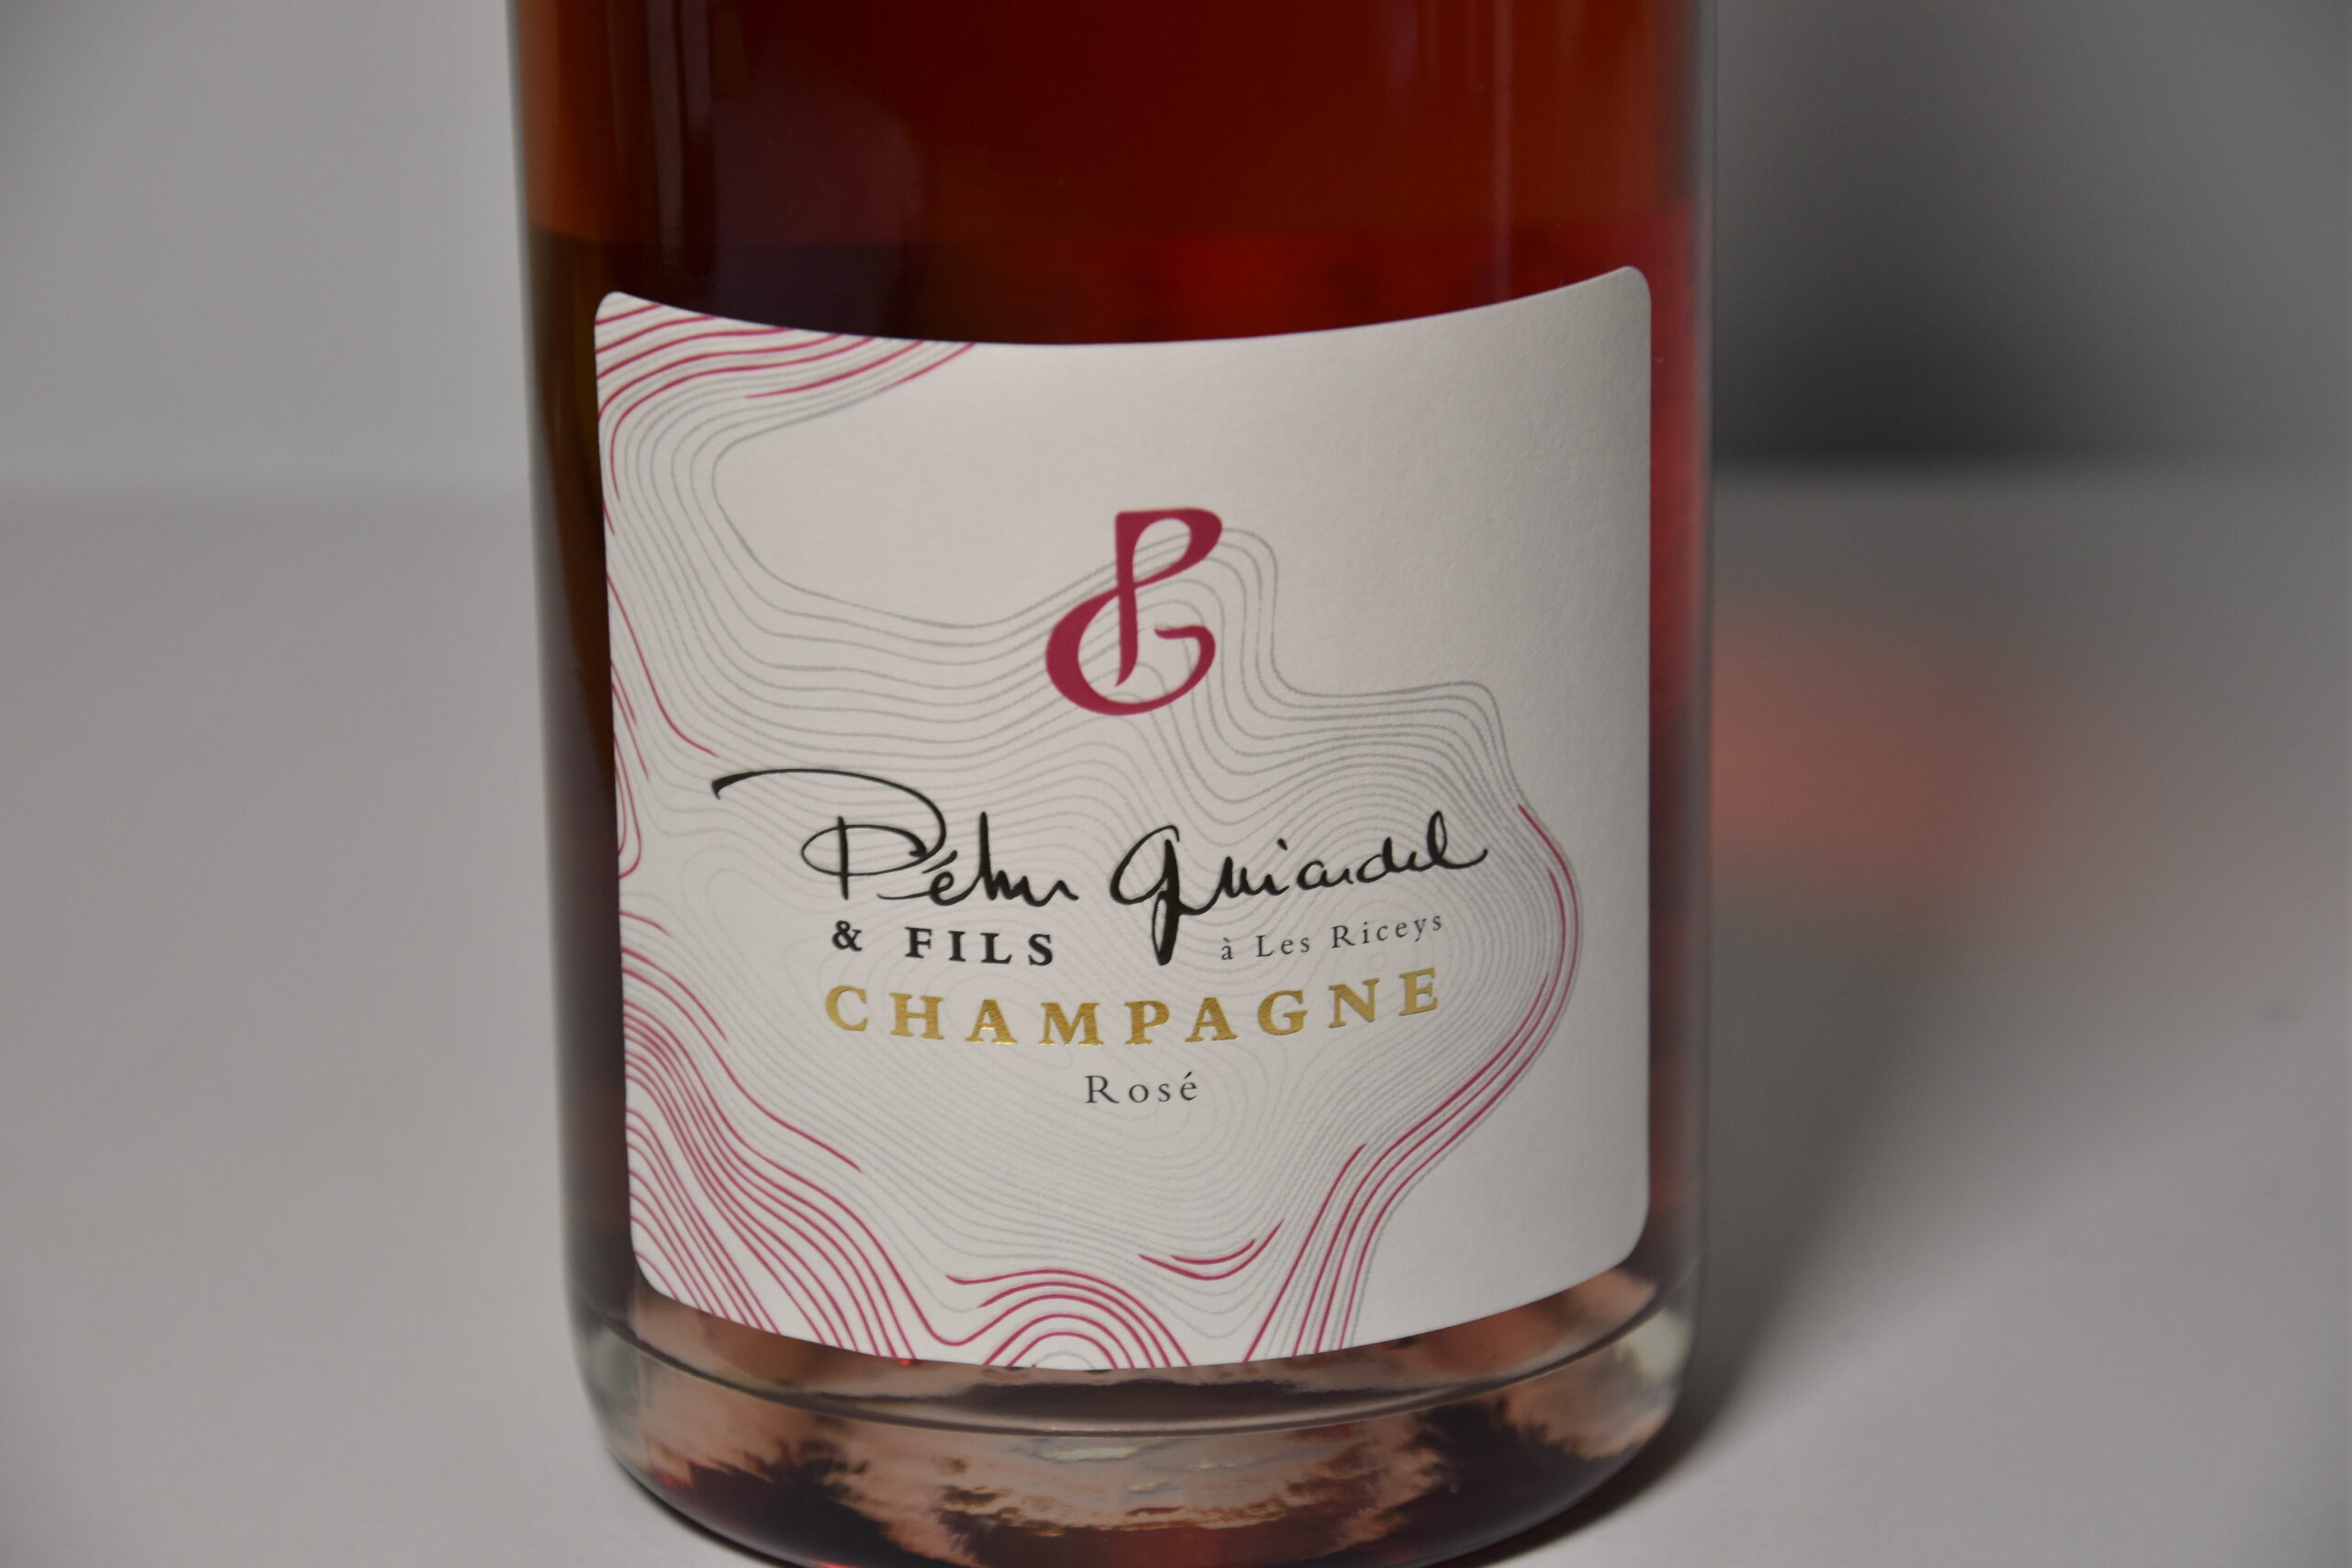 Découvrez ce Champagne Brut rosé au meilleur prix !